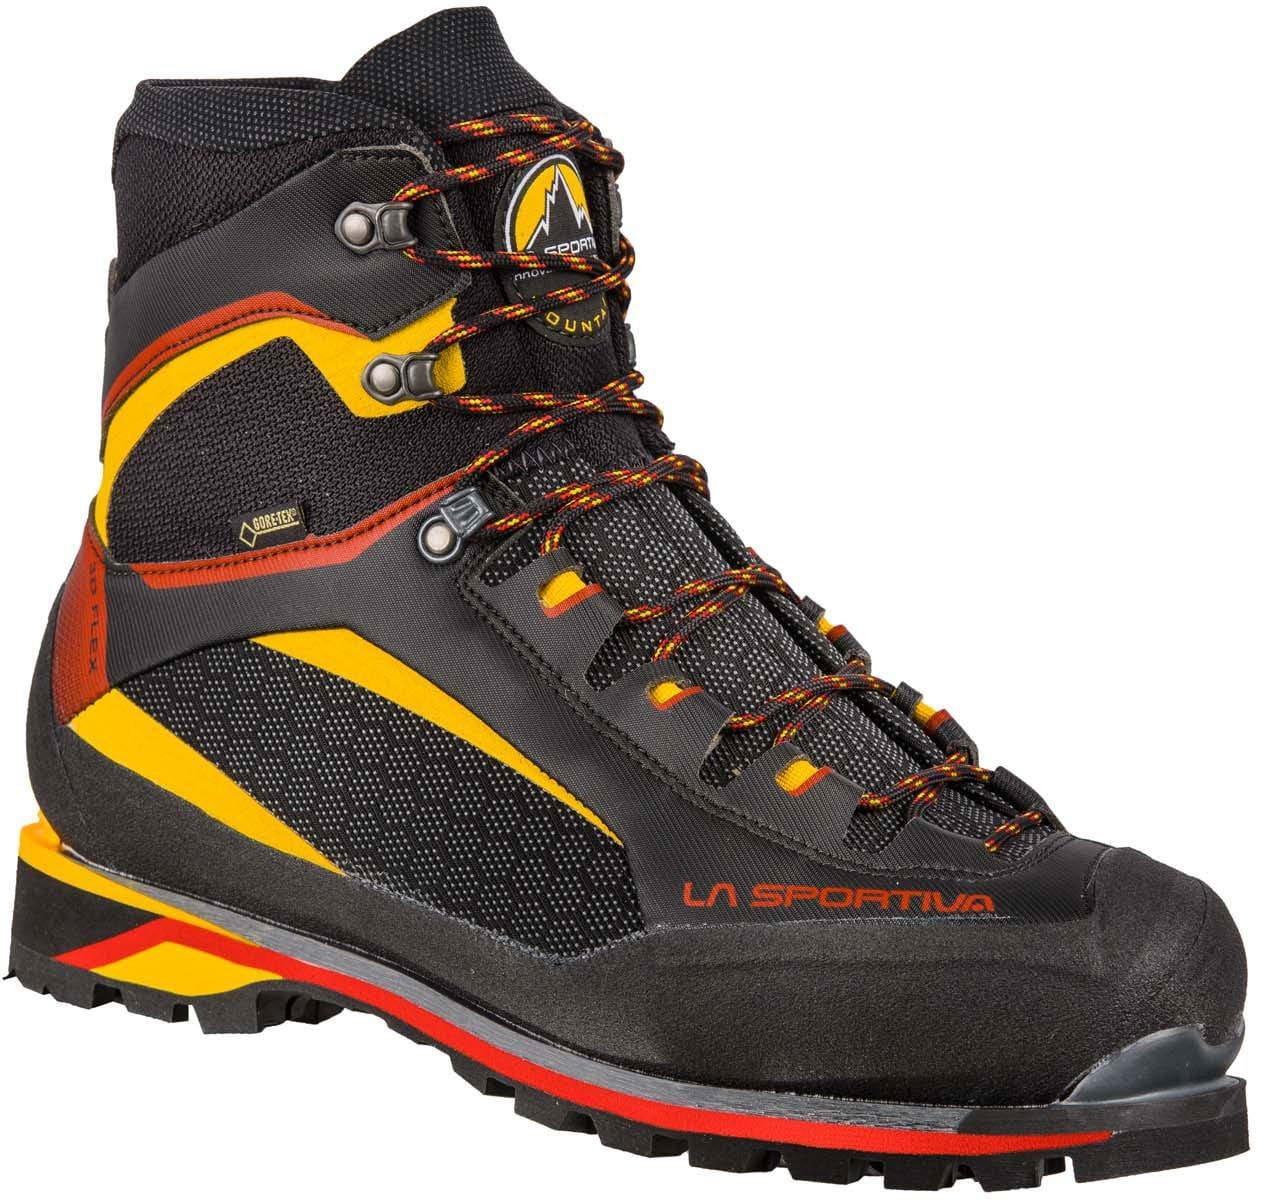 Outdoor-Schuhe für Männer La Sportiva Trango Tower Extreme GTX